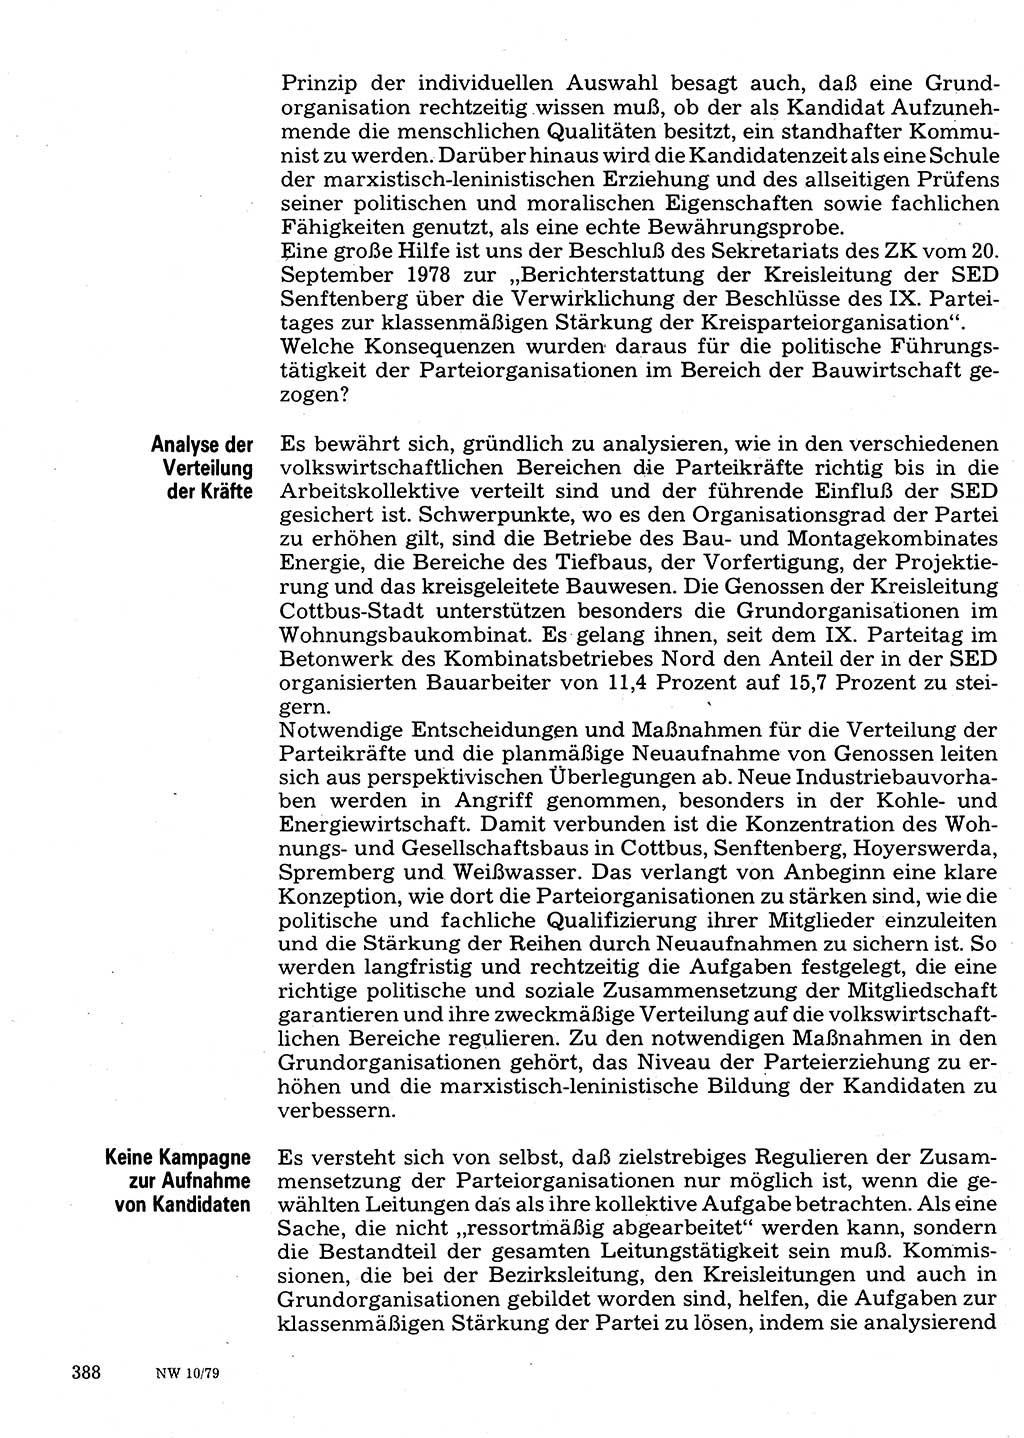 Neuer Weg (NW), Organ des Zentralkomitees (ZK) der SED (Sozialistische Einheitspartei Deutschlands) für Fragen des Parteilebens, 34. Jahrgang [Deutsche Demokratische Republik (DDR)] 1979, Seite 388 (NW ZK SED DDR 1979, S. 388)